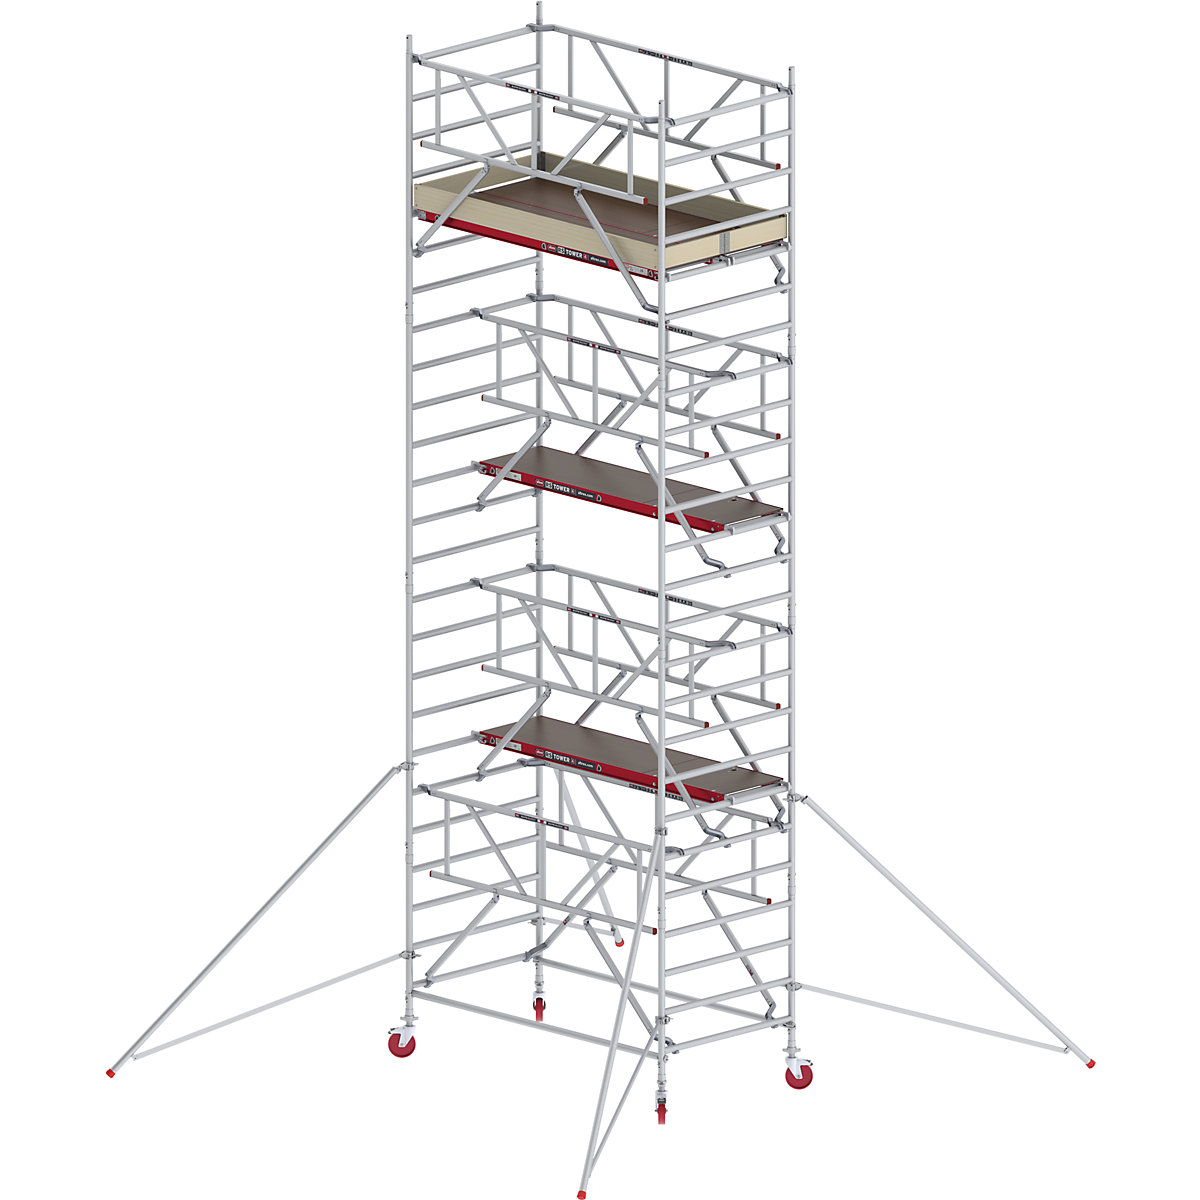 Trabattello mobile RS TOWER 42 largo con Safe-Quick® – Altrex, piattaforma in legno, lunghezza 1,85 m, altezza di lavoro 8,20 m-4